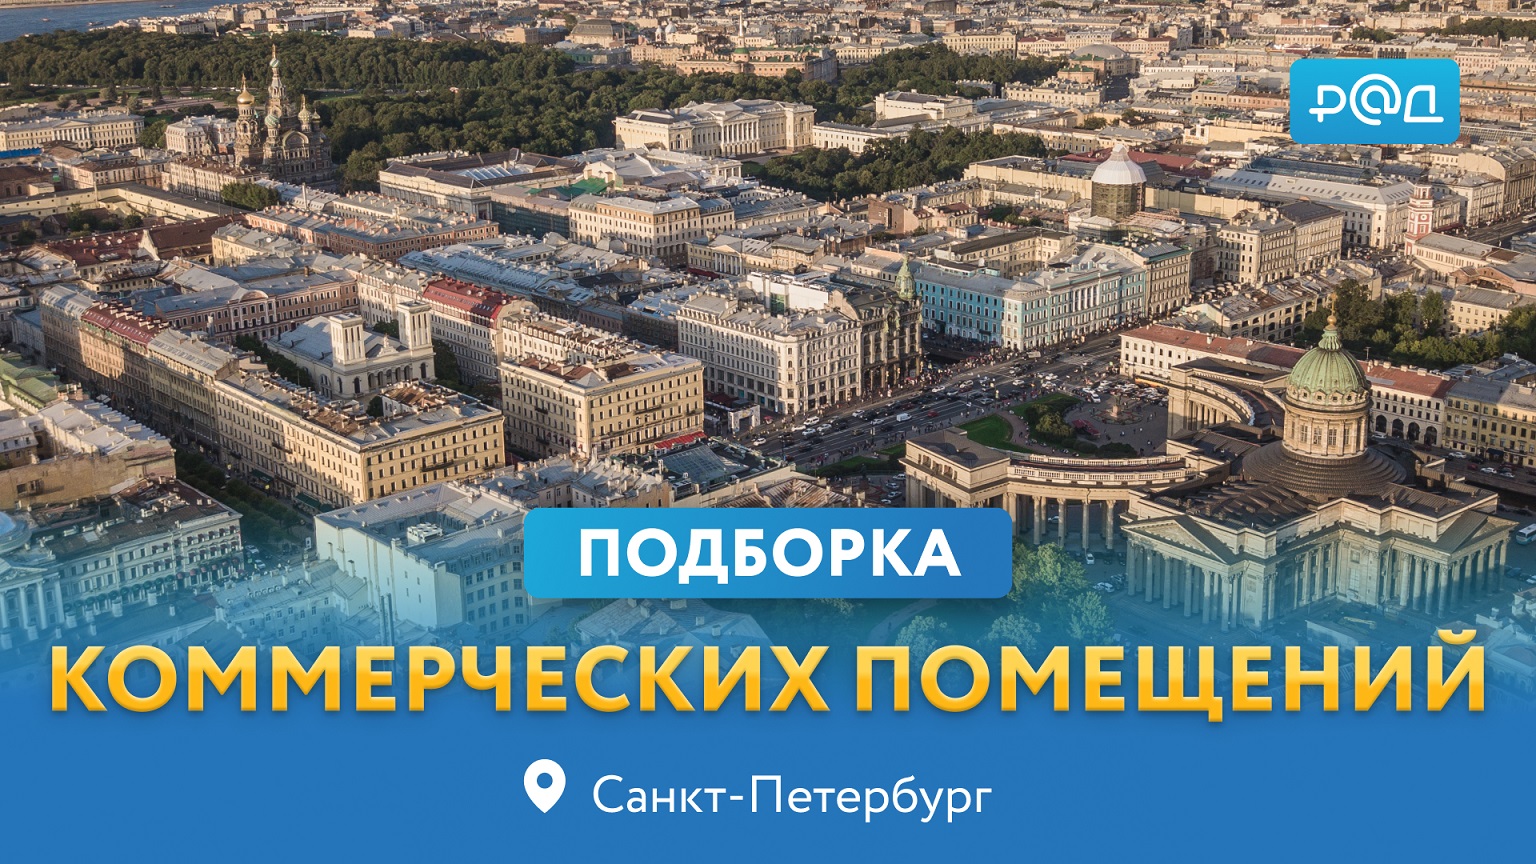 Подборка помещений в центре Санкт-Петербурга